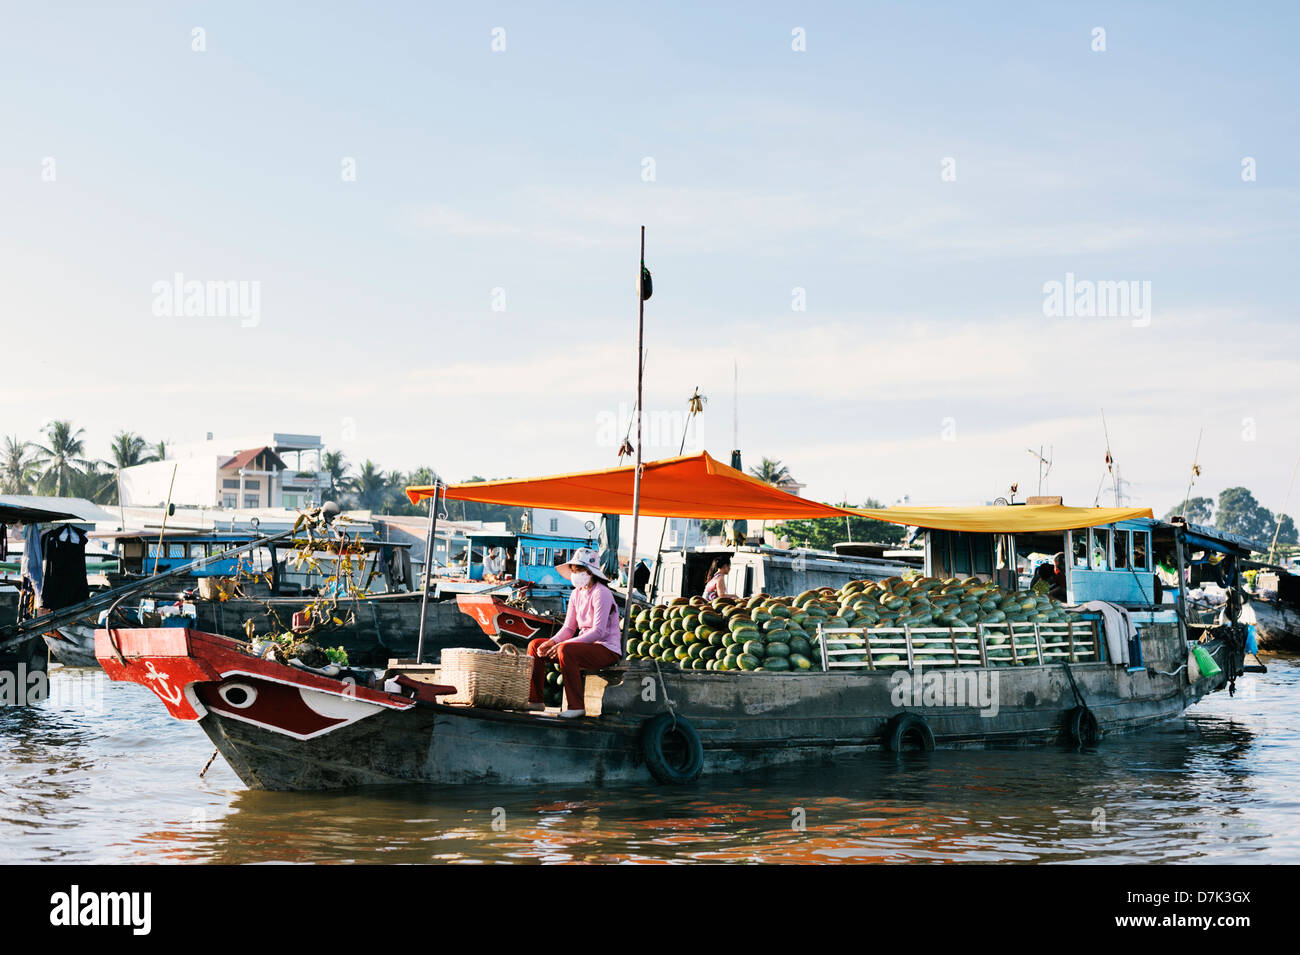 Can Tho, Vietnam - mercato galleggiante nel Delta del Mekong - una barca piena di cocomeri - tradizionale occhio sullo scafo Foto Stock